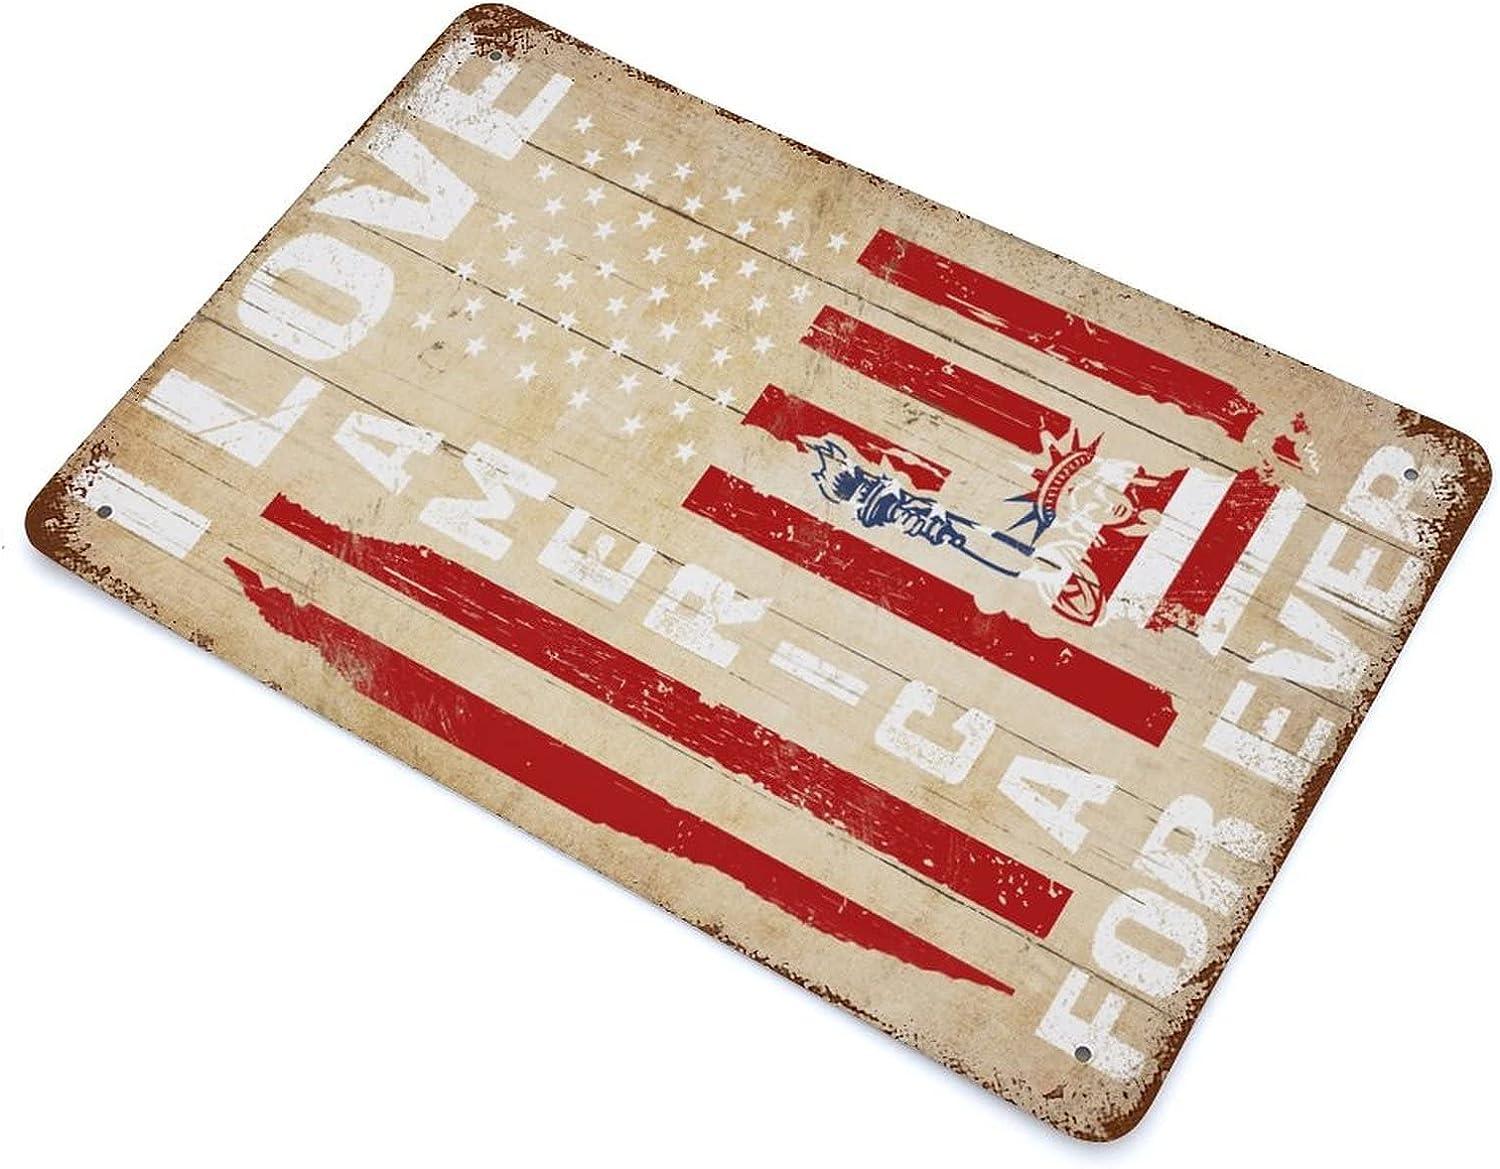 علامة العلم الأمريكي علامة علم الولايات المتحدة الأمريكية ذكرى الآباء العلم الأمريكي معدن الولايات المتحدة الأمريكية علامة معدنية هدية عيد الاستقلال مخصصة